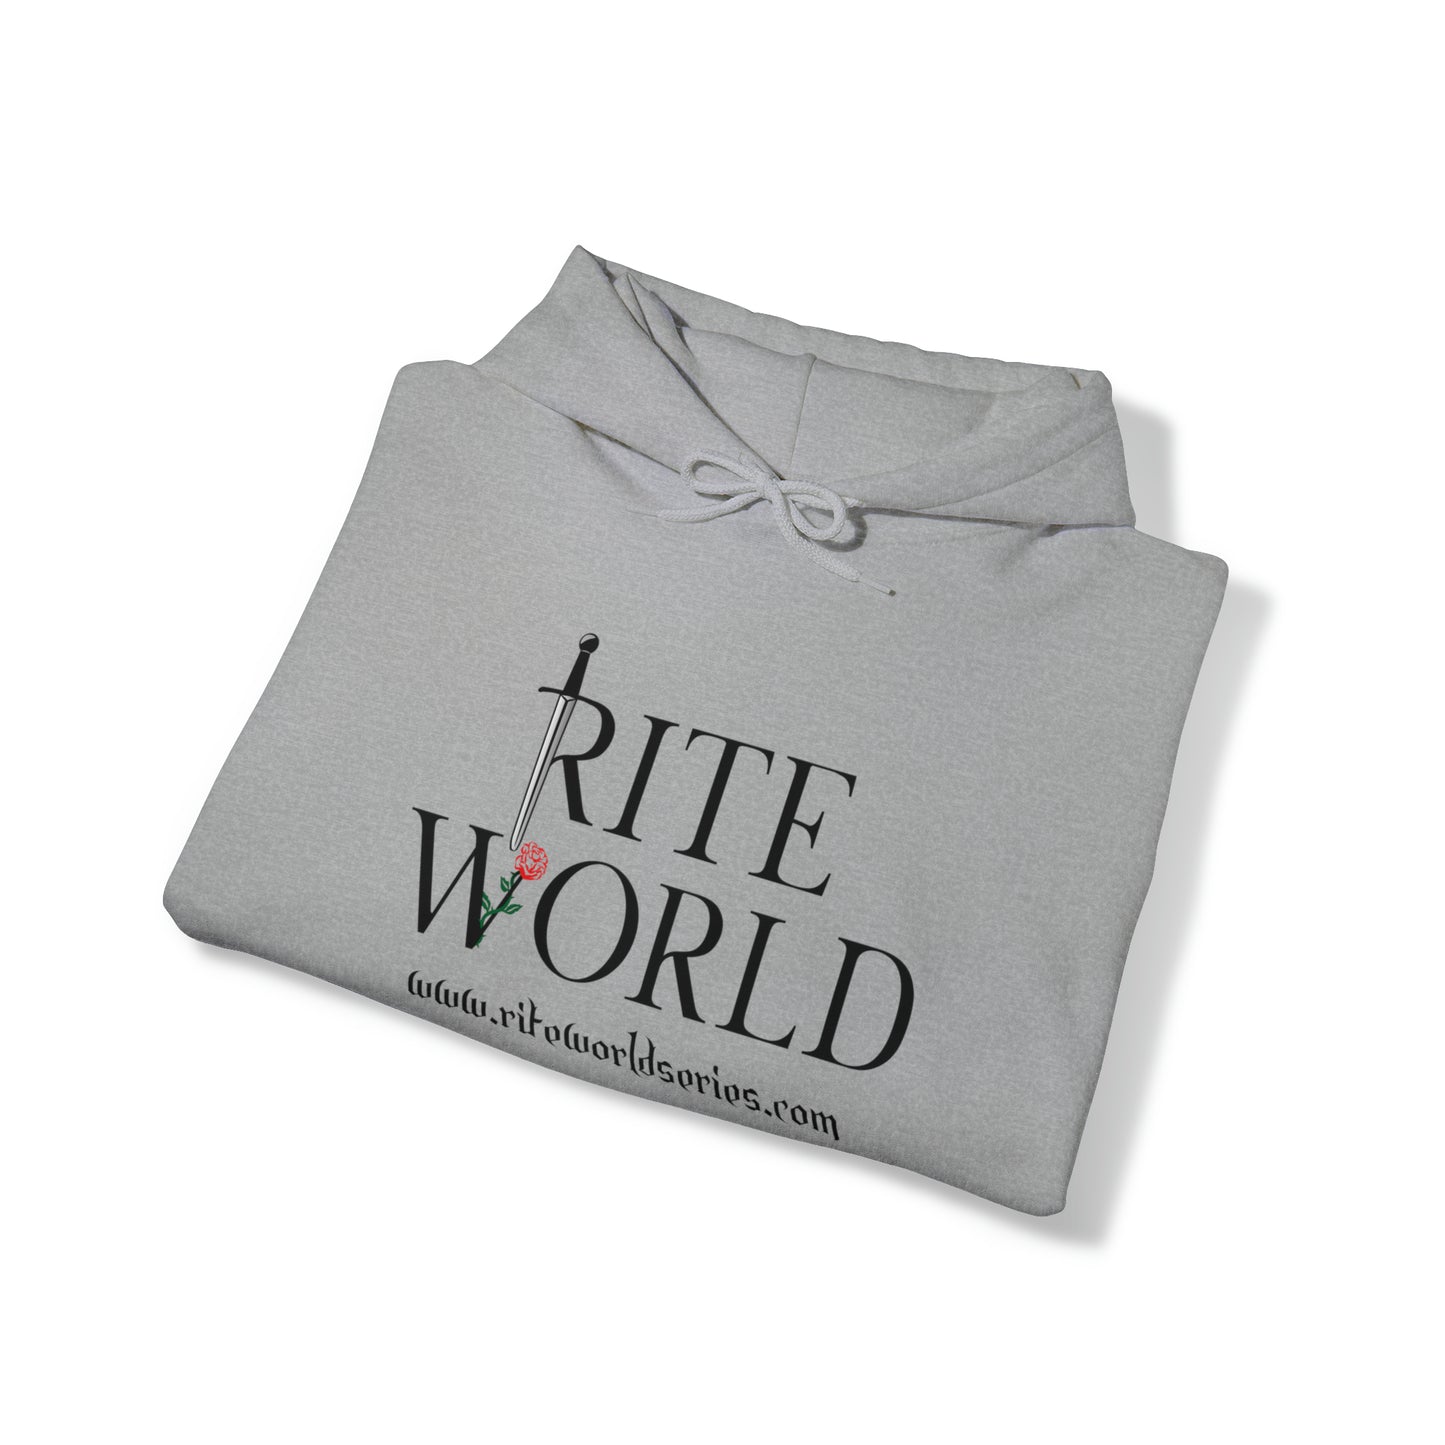 Rite World Hooded Sweatshirt